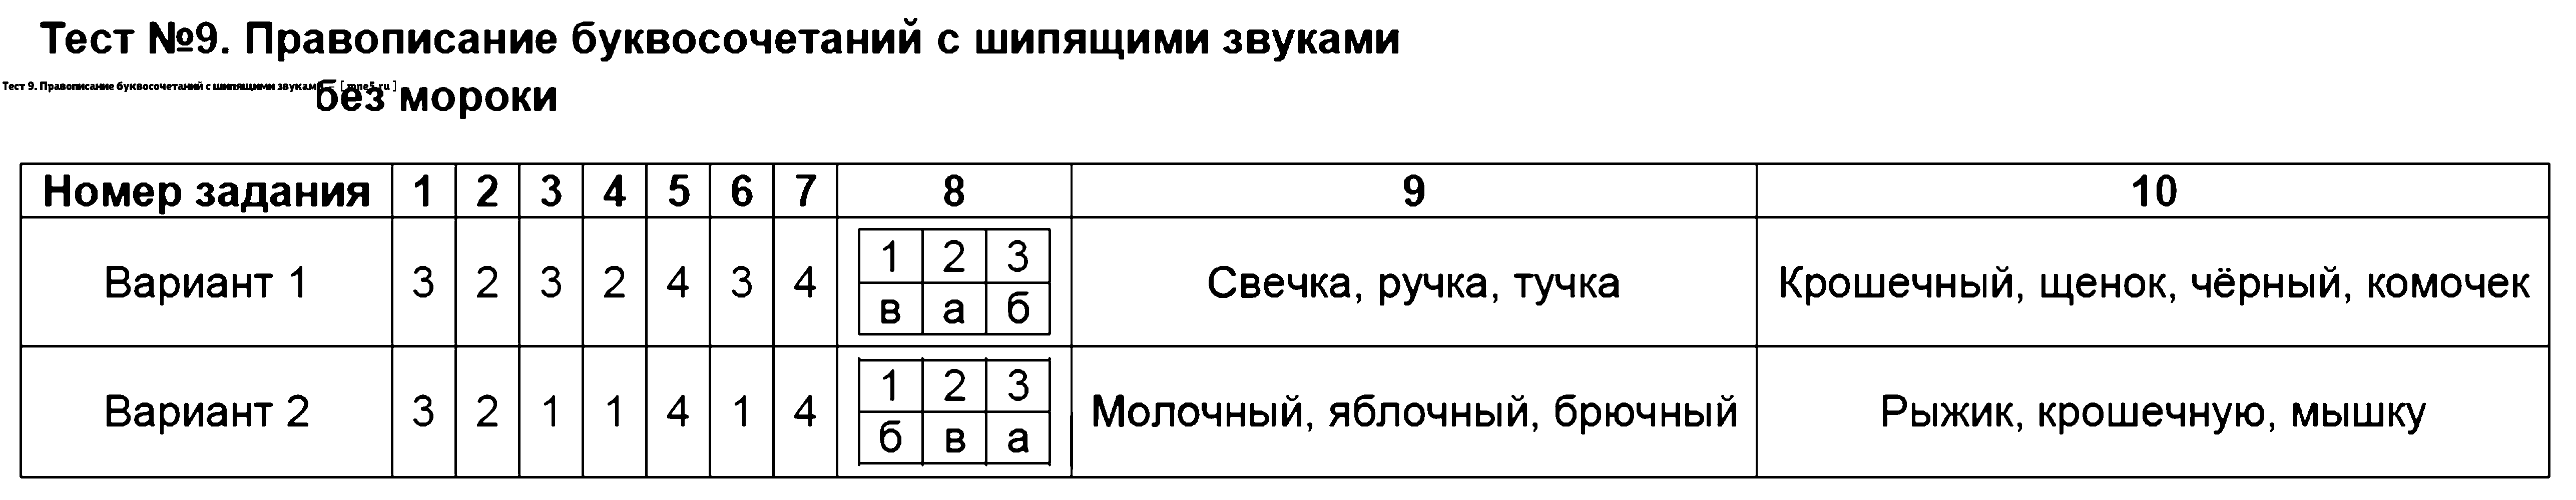 ГДЗ Русский язык 2 класс - Тест 9. Правописание буквосочетаний с шипящими звуками